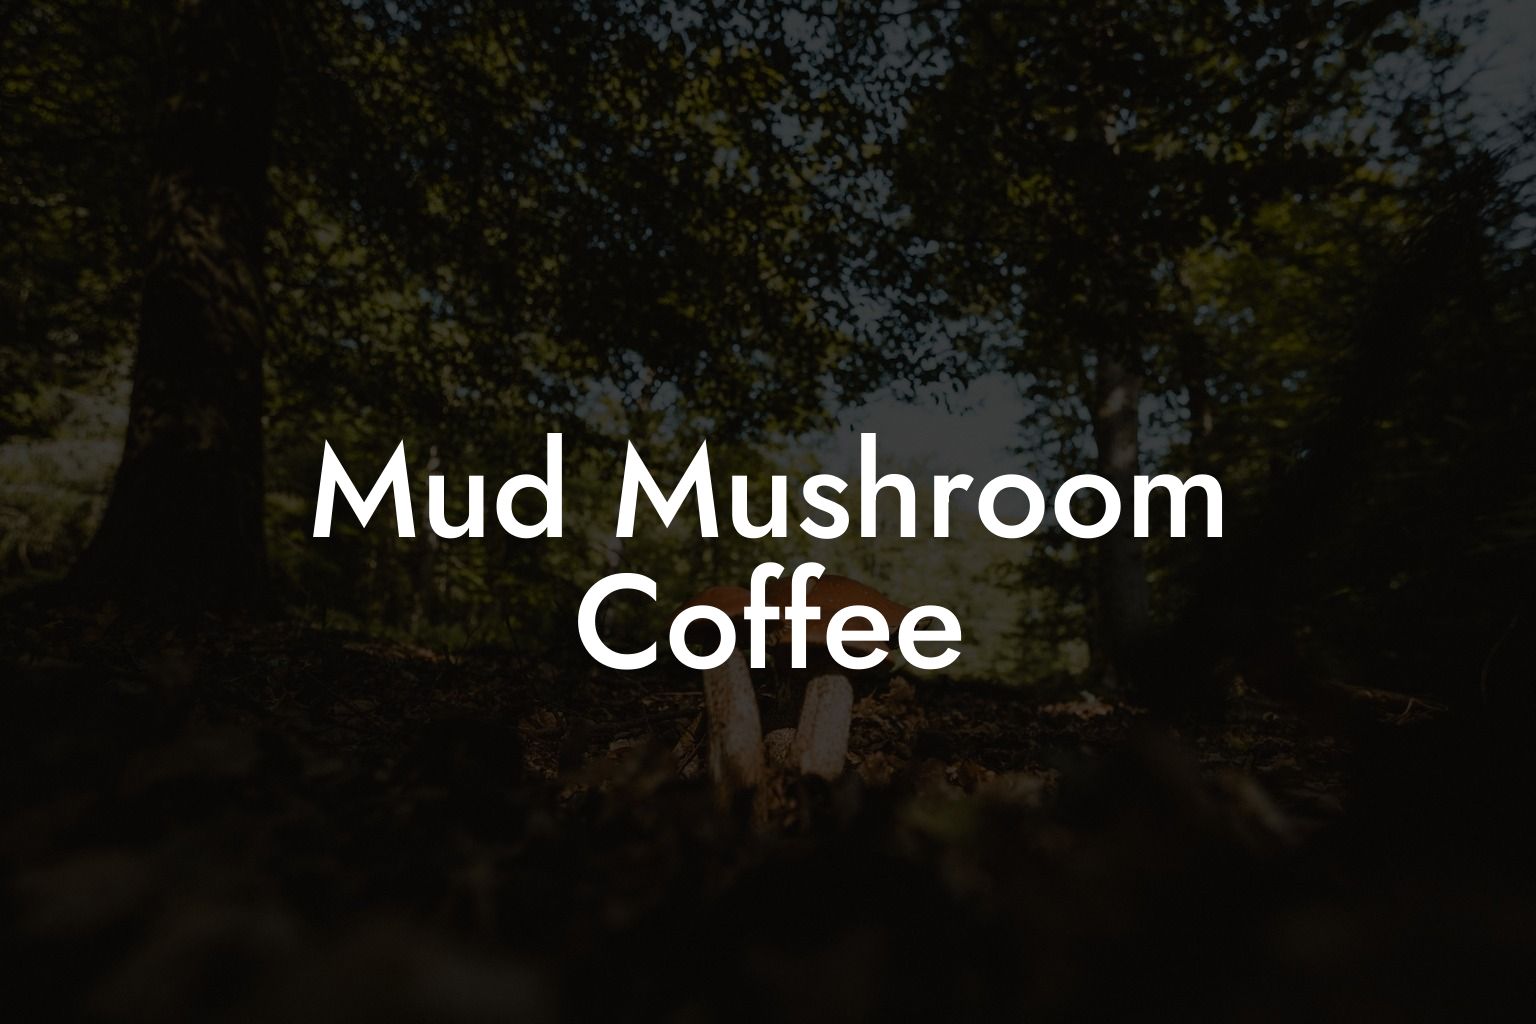 Mud Mushroom Coffee